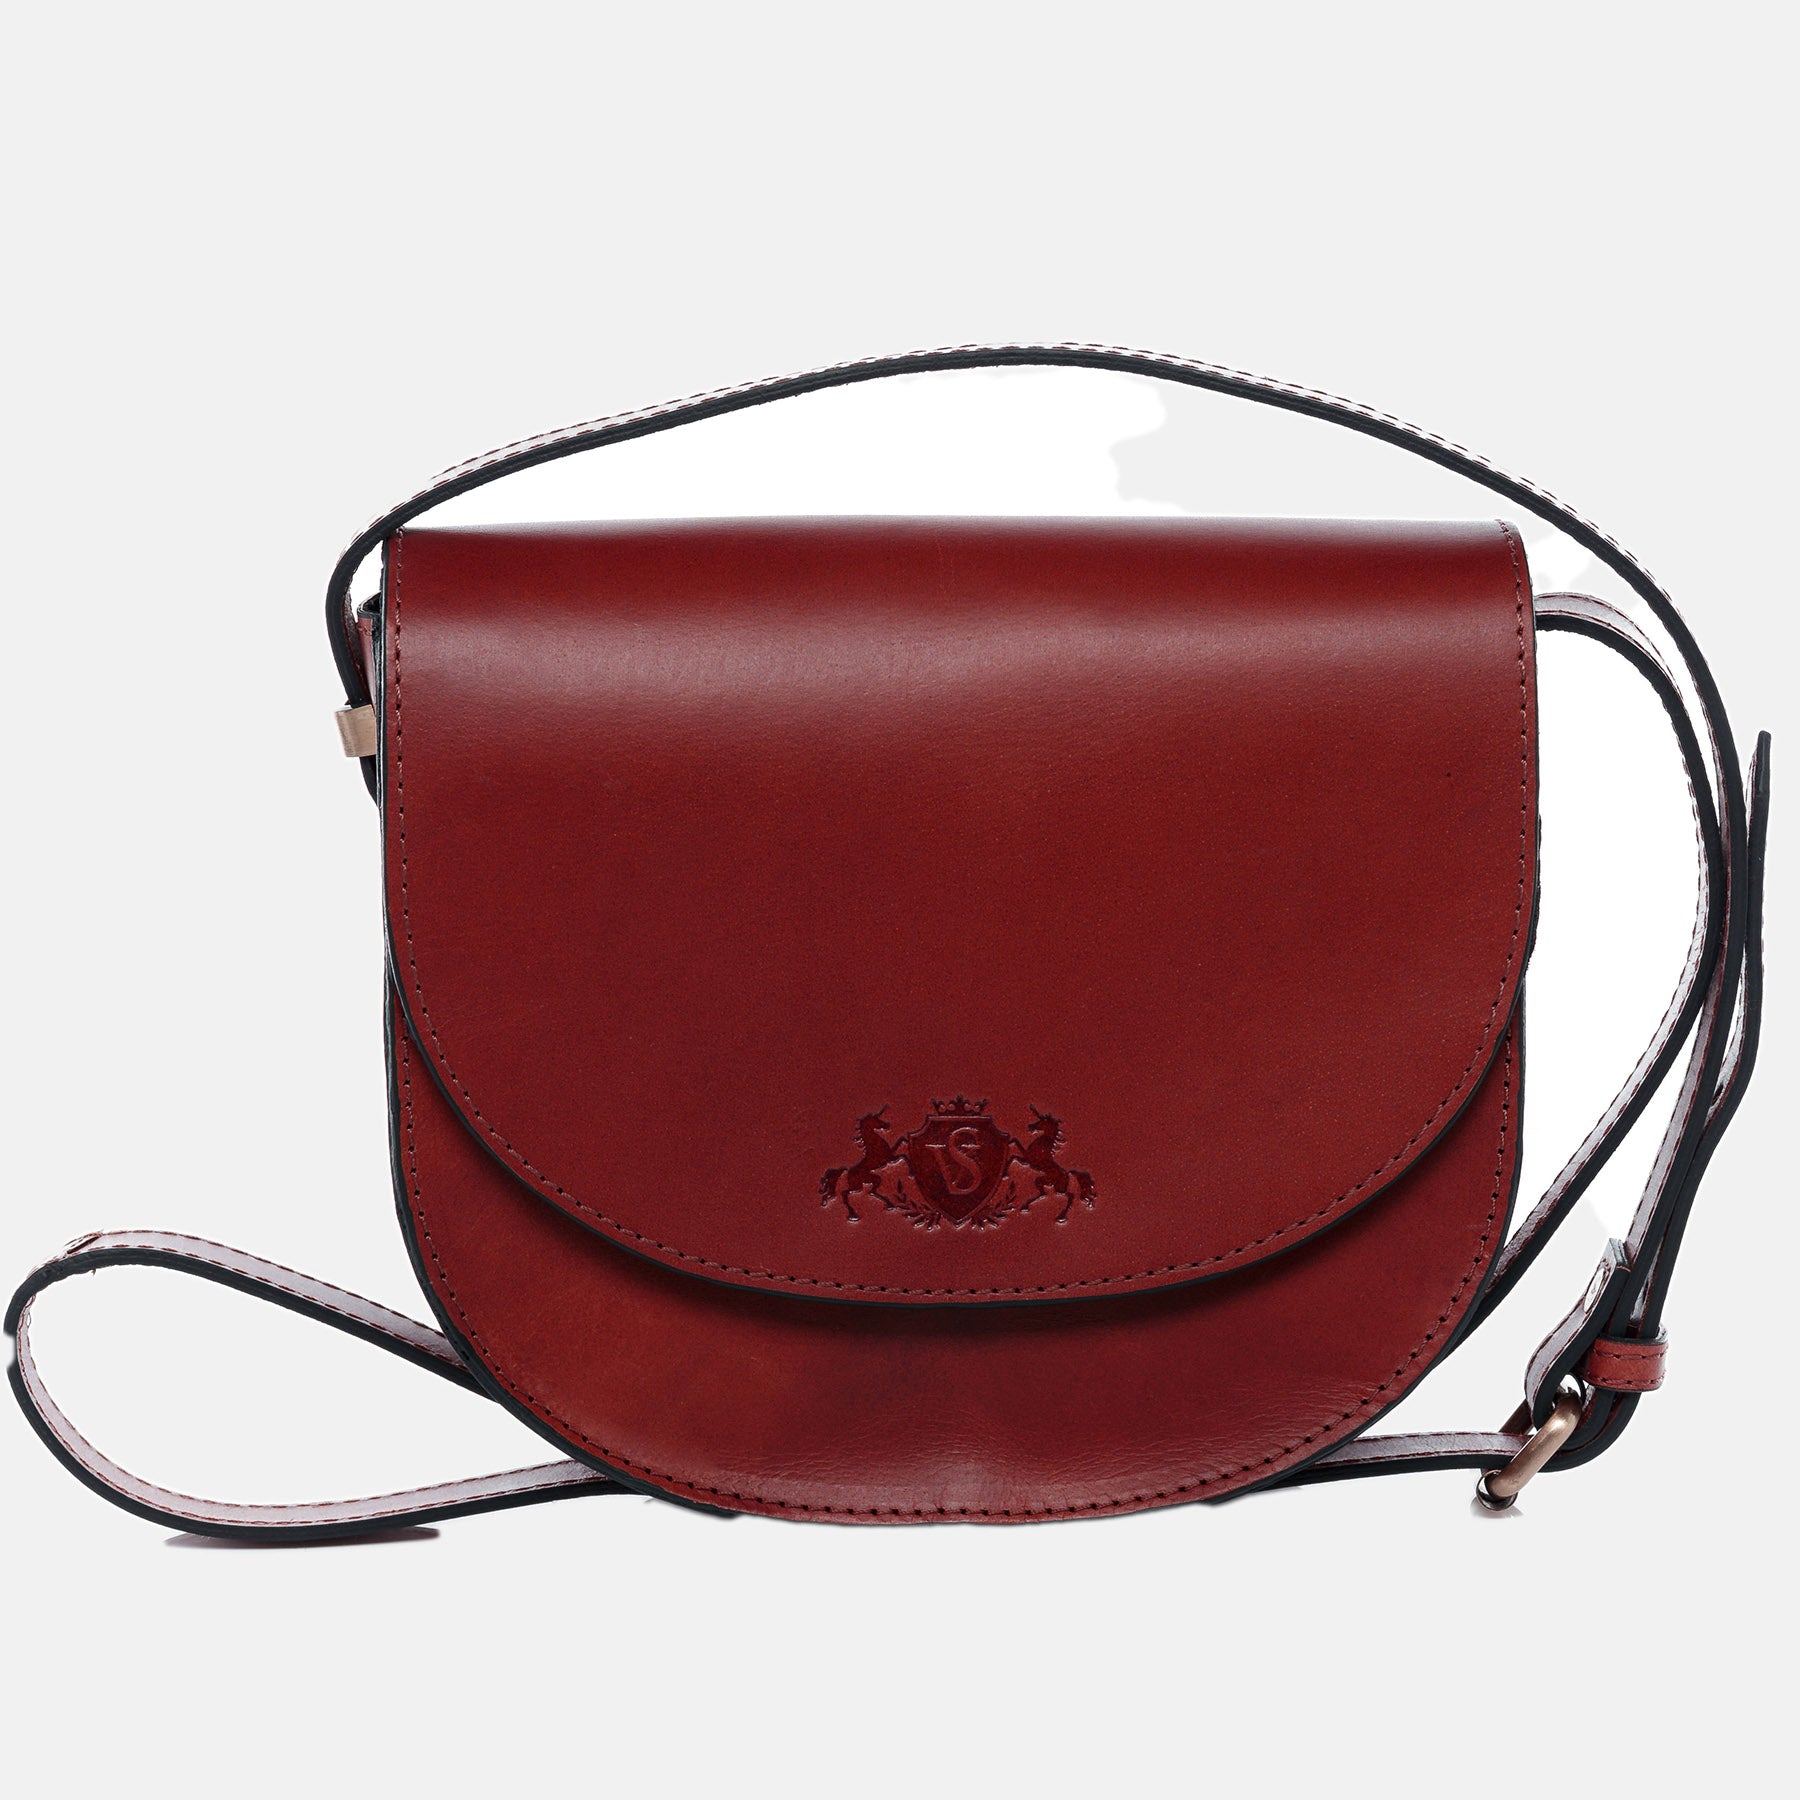 Shoulder bag TRISH saddle leather red